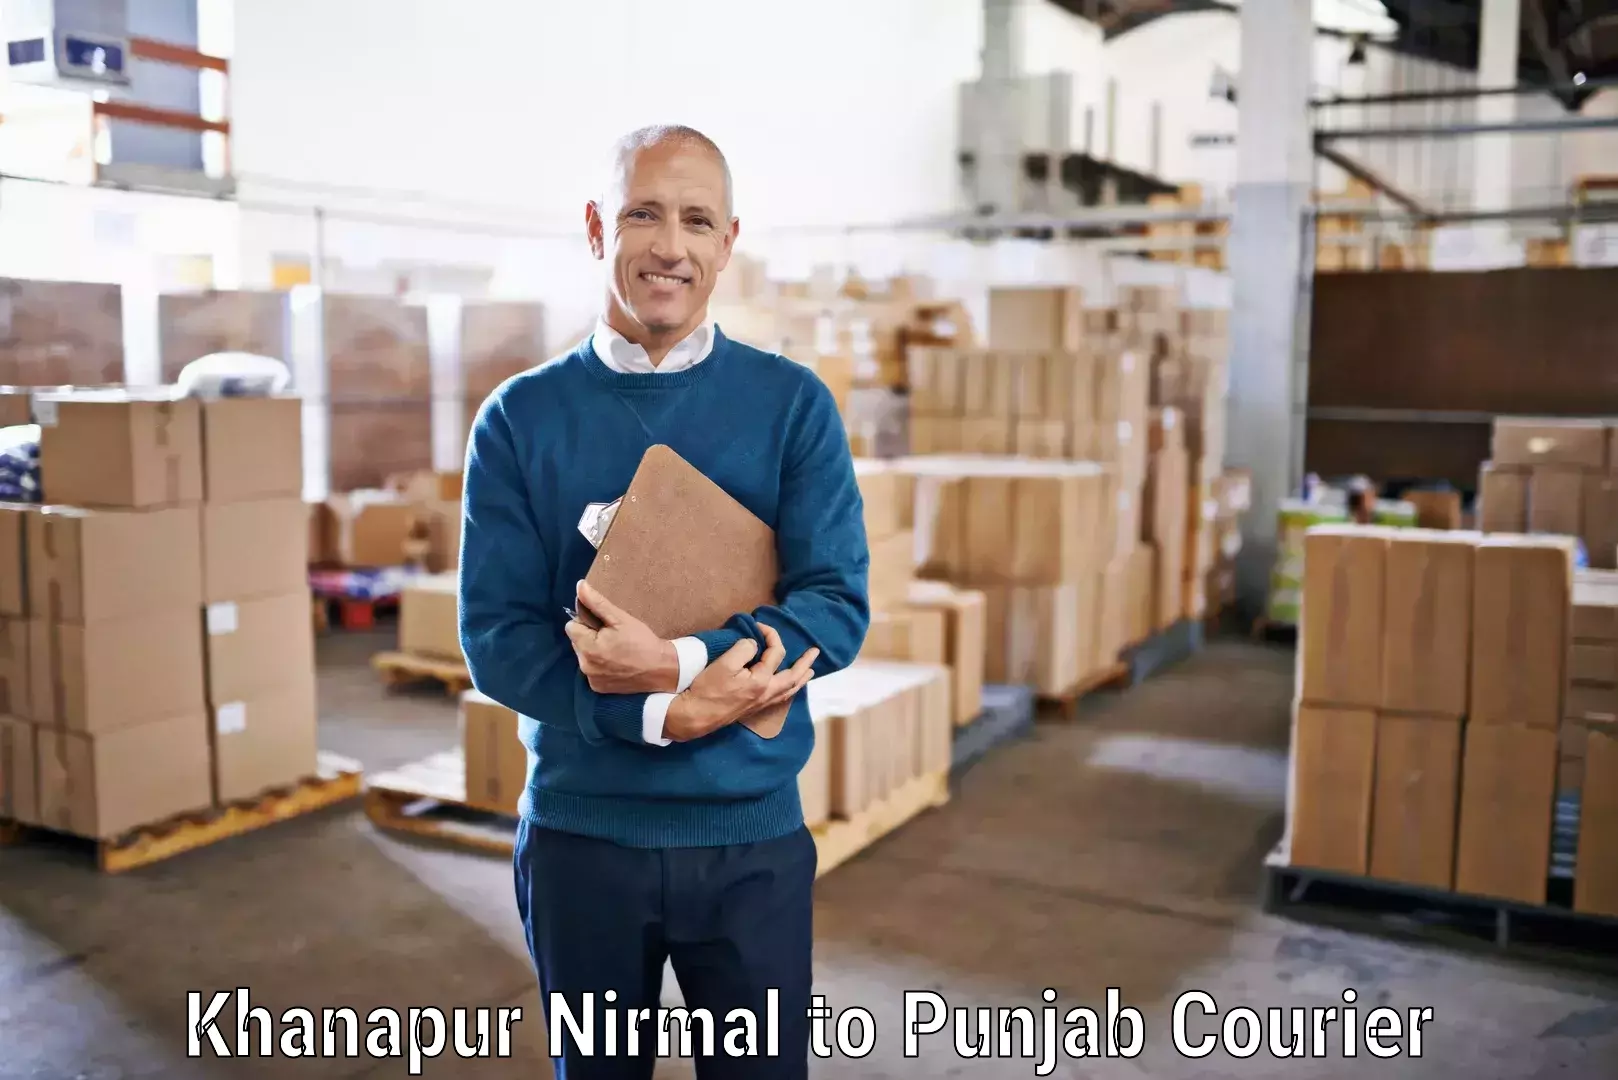 Reliable freight solutions Khanapur Nirmal to Nawanshahr